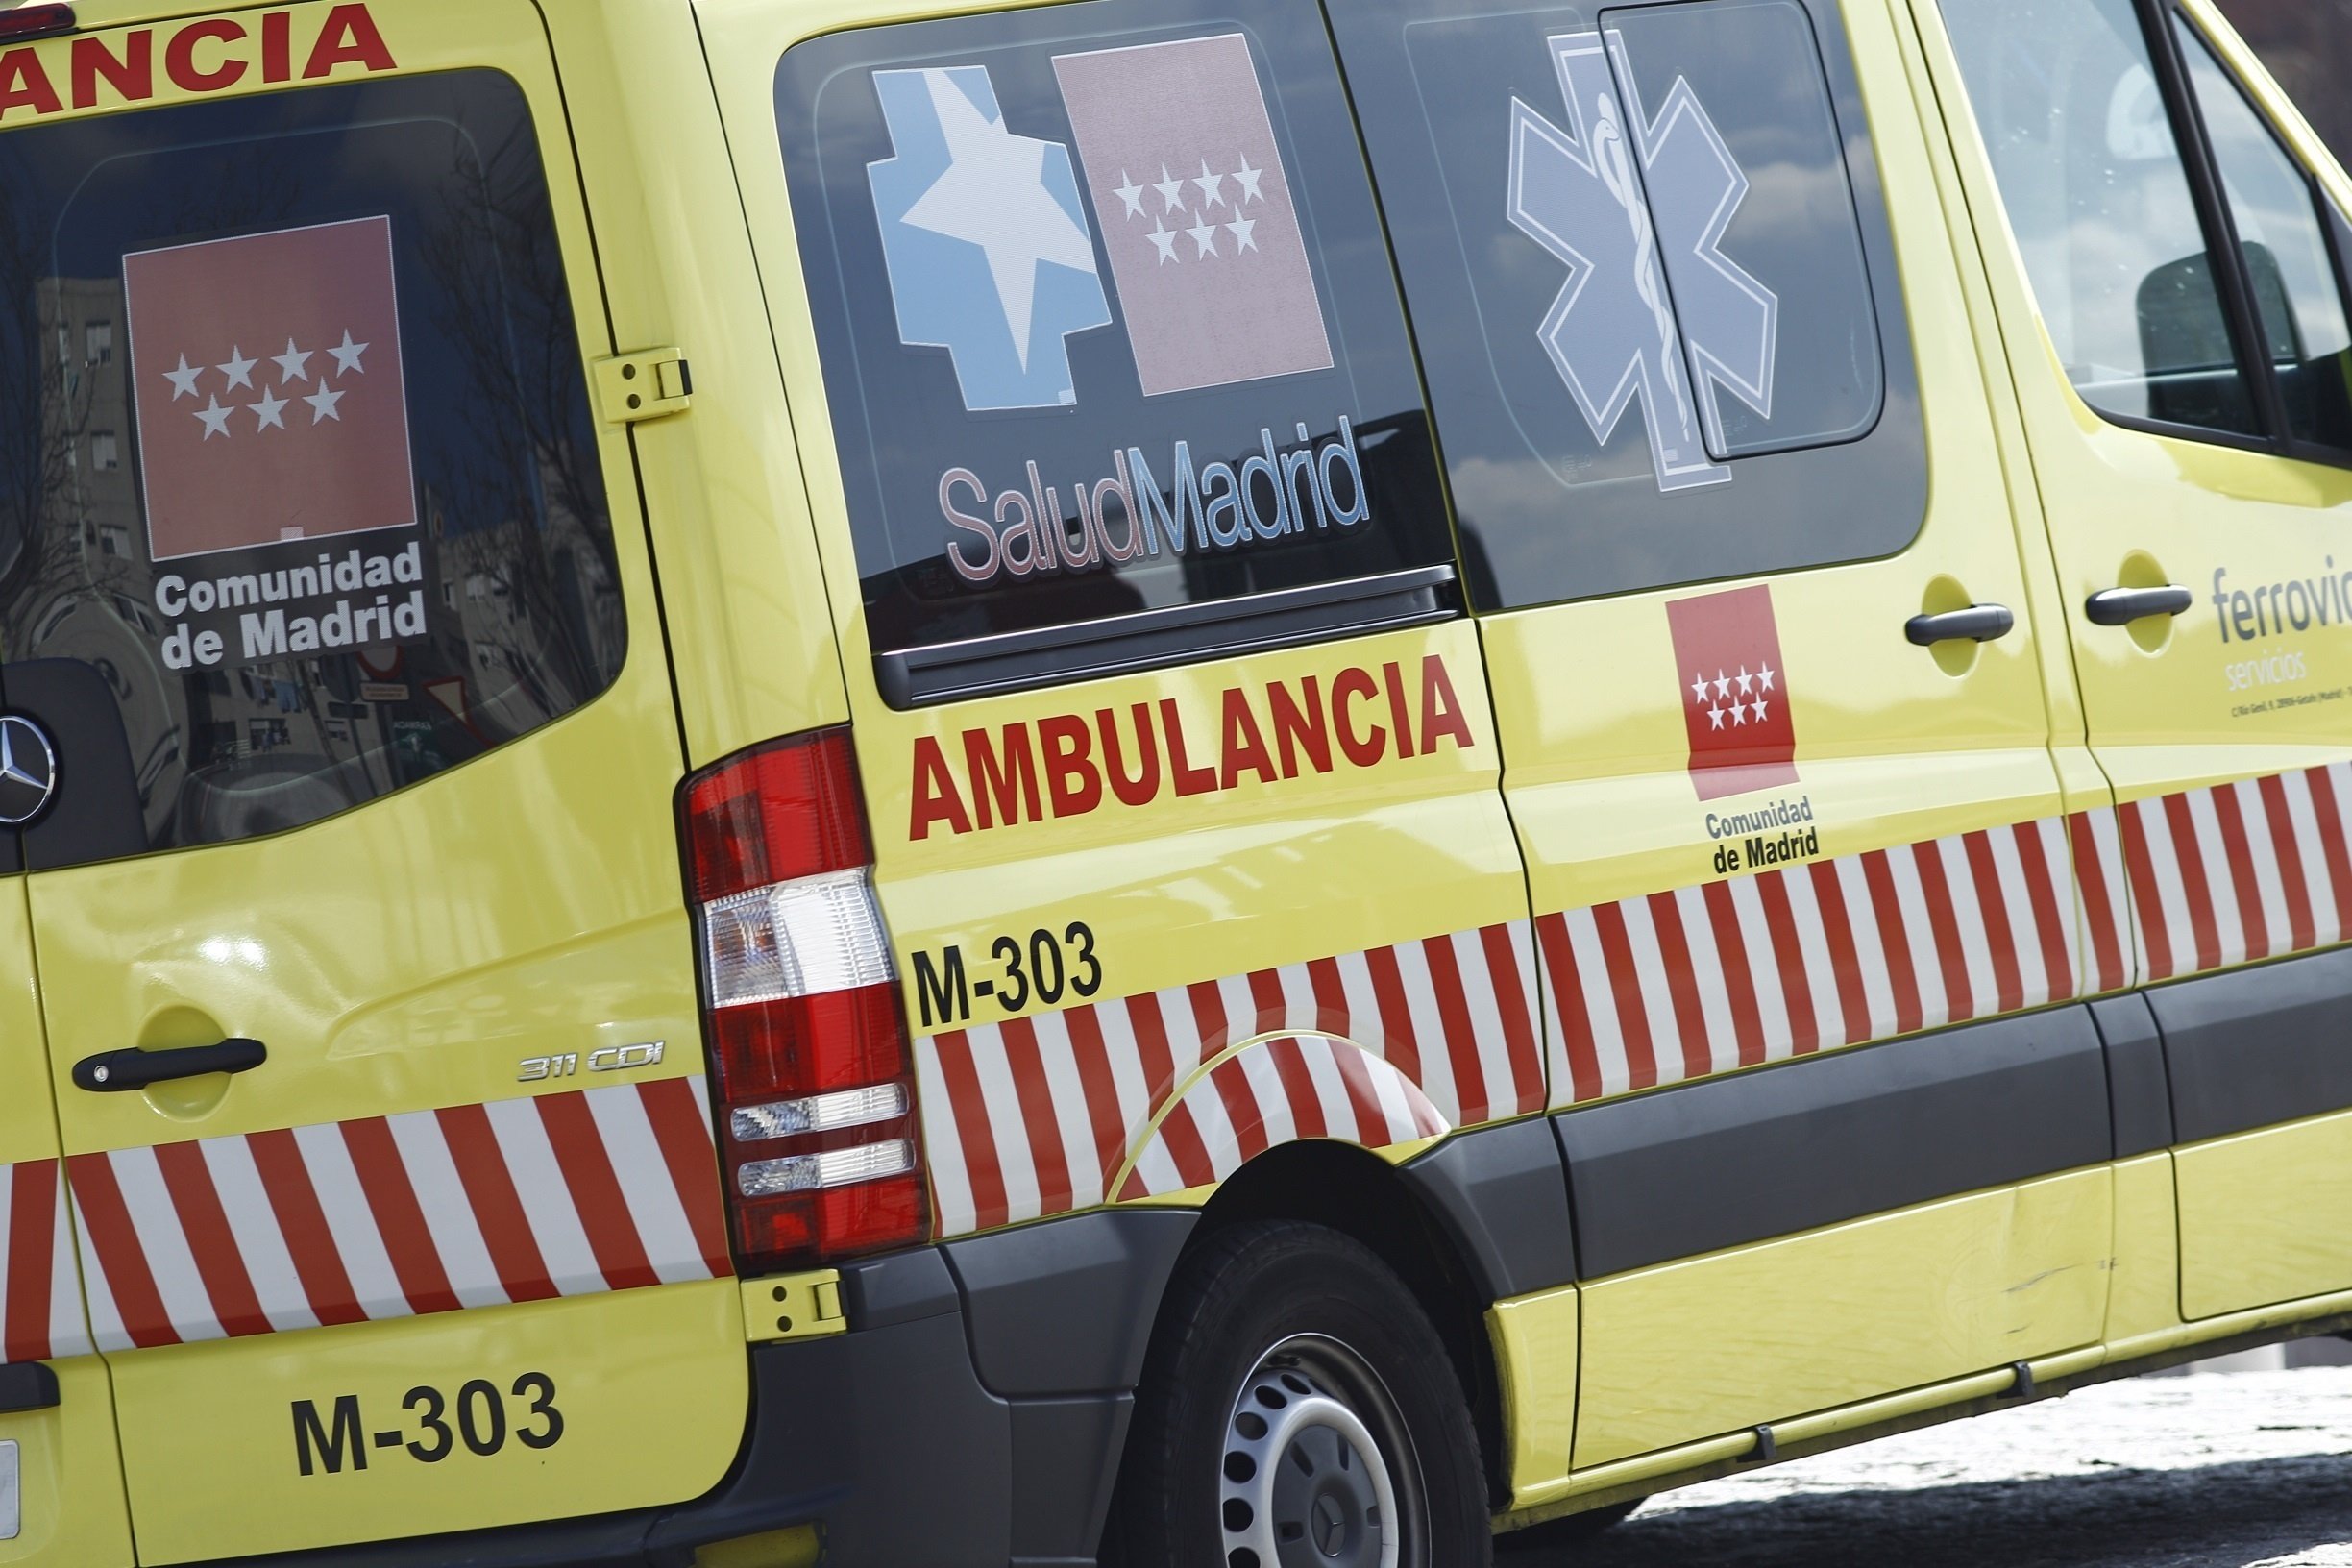 Una ambulància del Summa 112 de la Comunitat de Madrid com la que s'ha desplaçat fins al pis de Fuenlabrada aquest dilluns / EUROPA PRESS